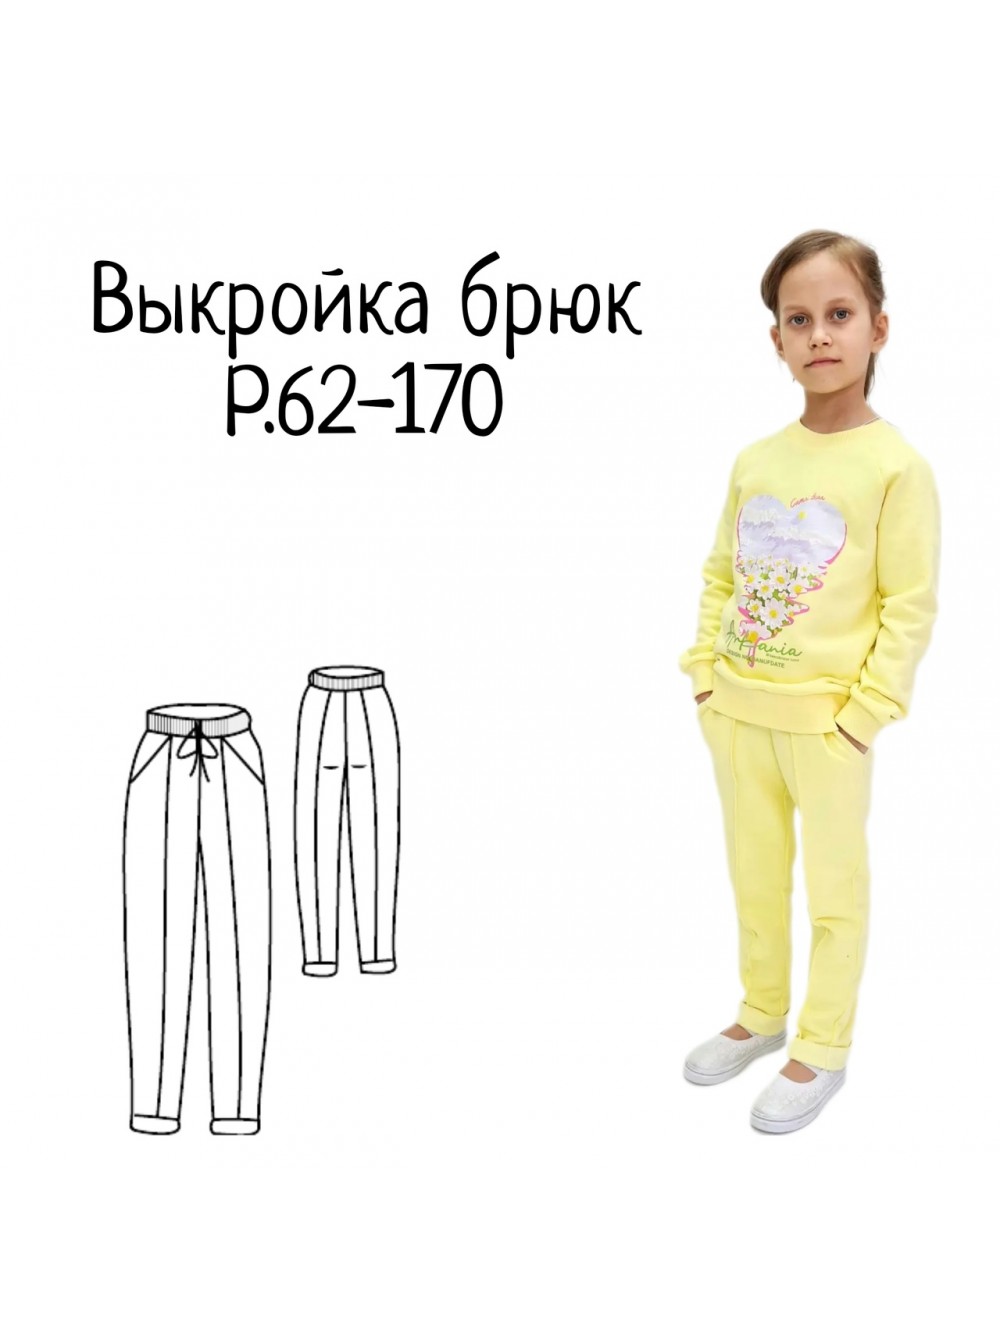 Выкройки брюк для мальчиков от Burda – купить и скачать на pizzastr.ru